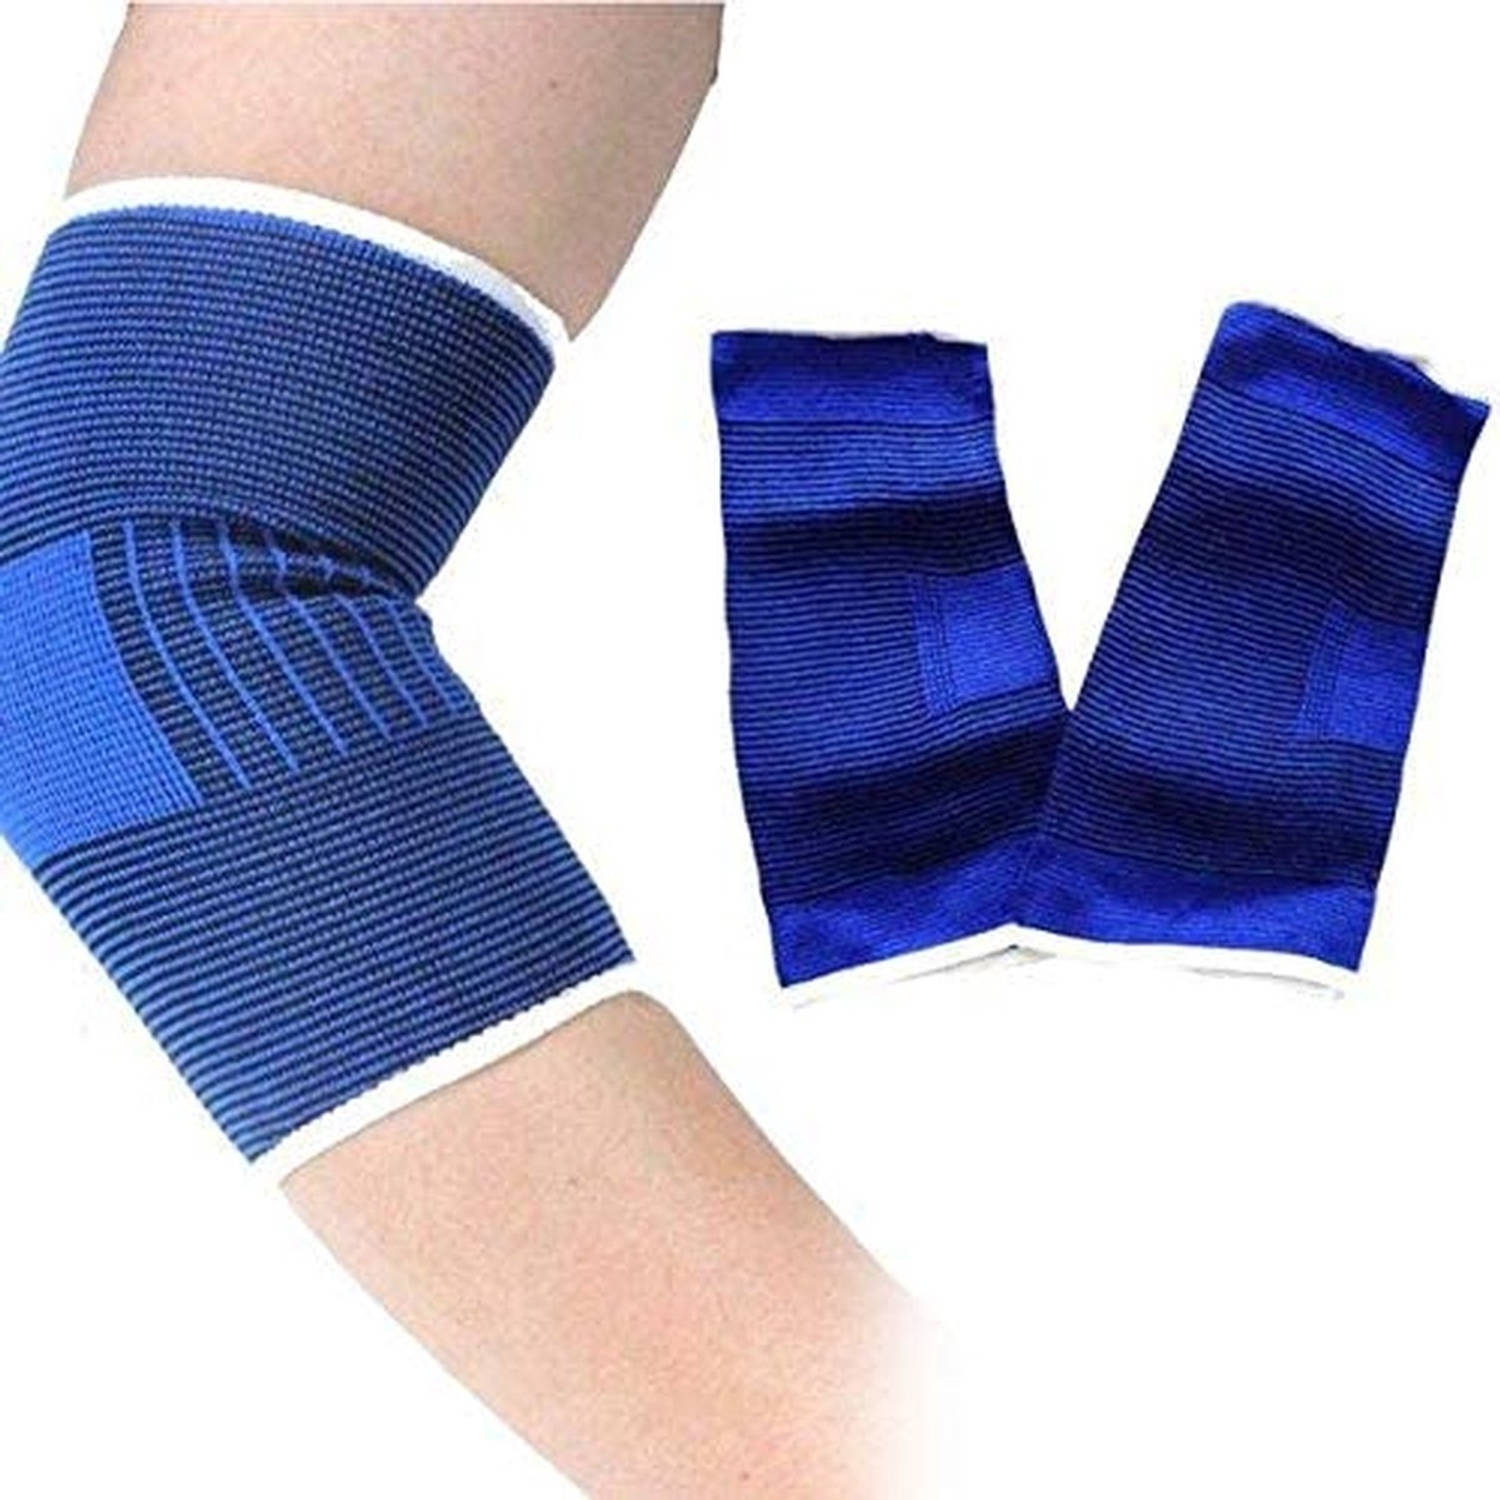 Bandages Elleboogbeschermers maat Small - 2 stuks - blauw - Elleboog brace elastisch 2 stuks